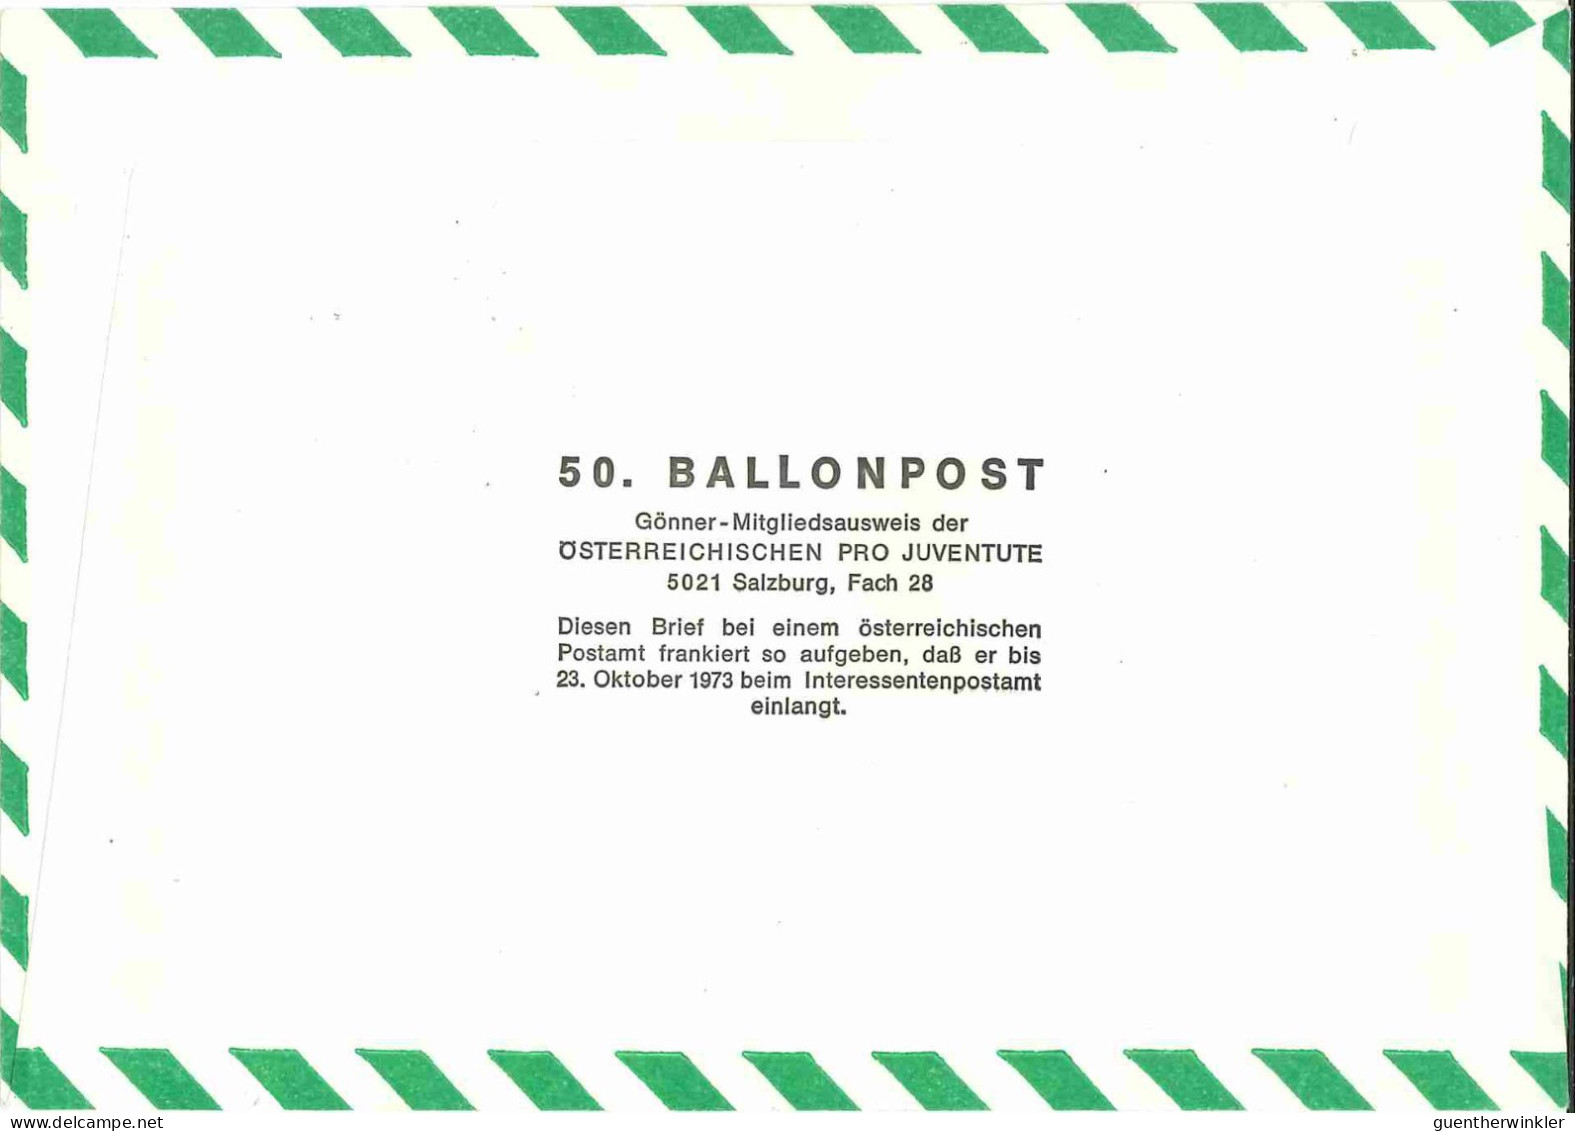 Regulärer Ballonpostflug Nr. 50d Der Pro Juventute [RBP50b] - Par Ballon